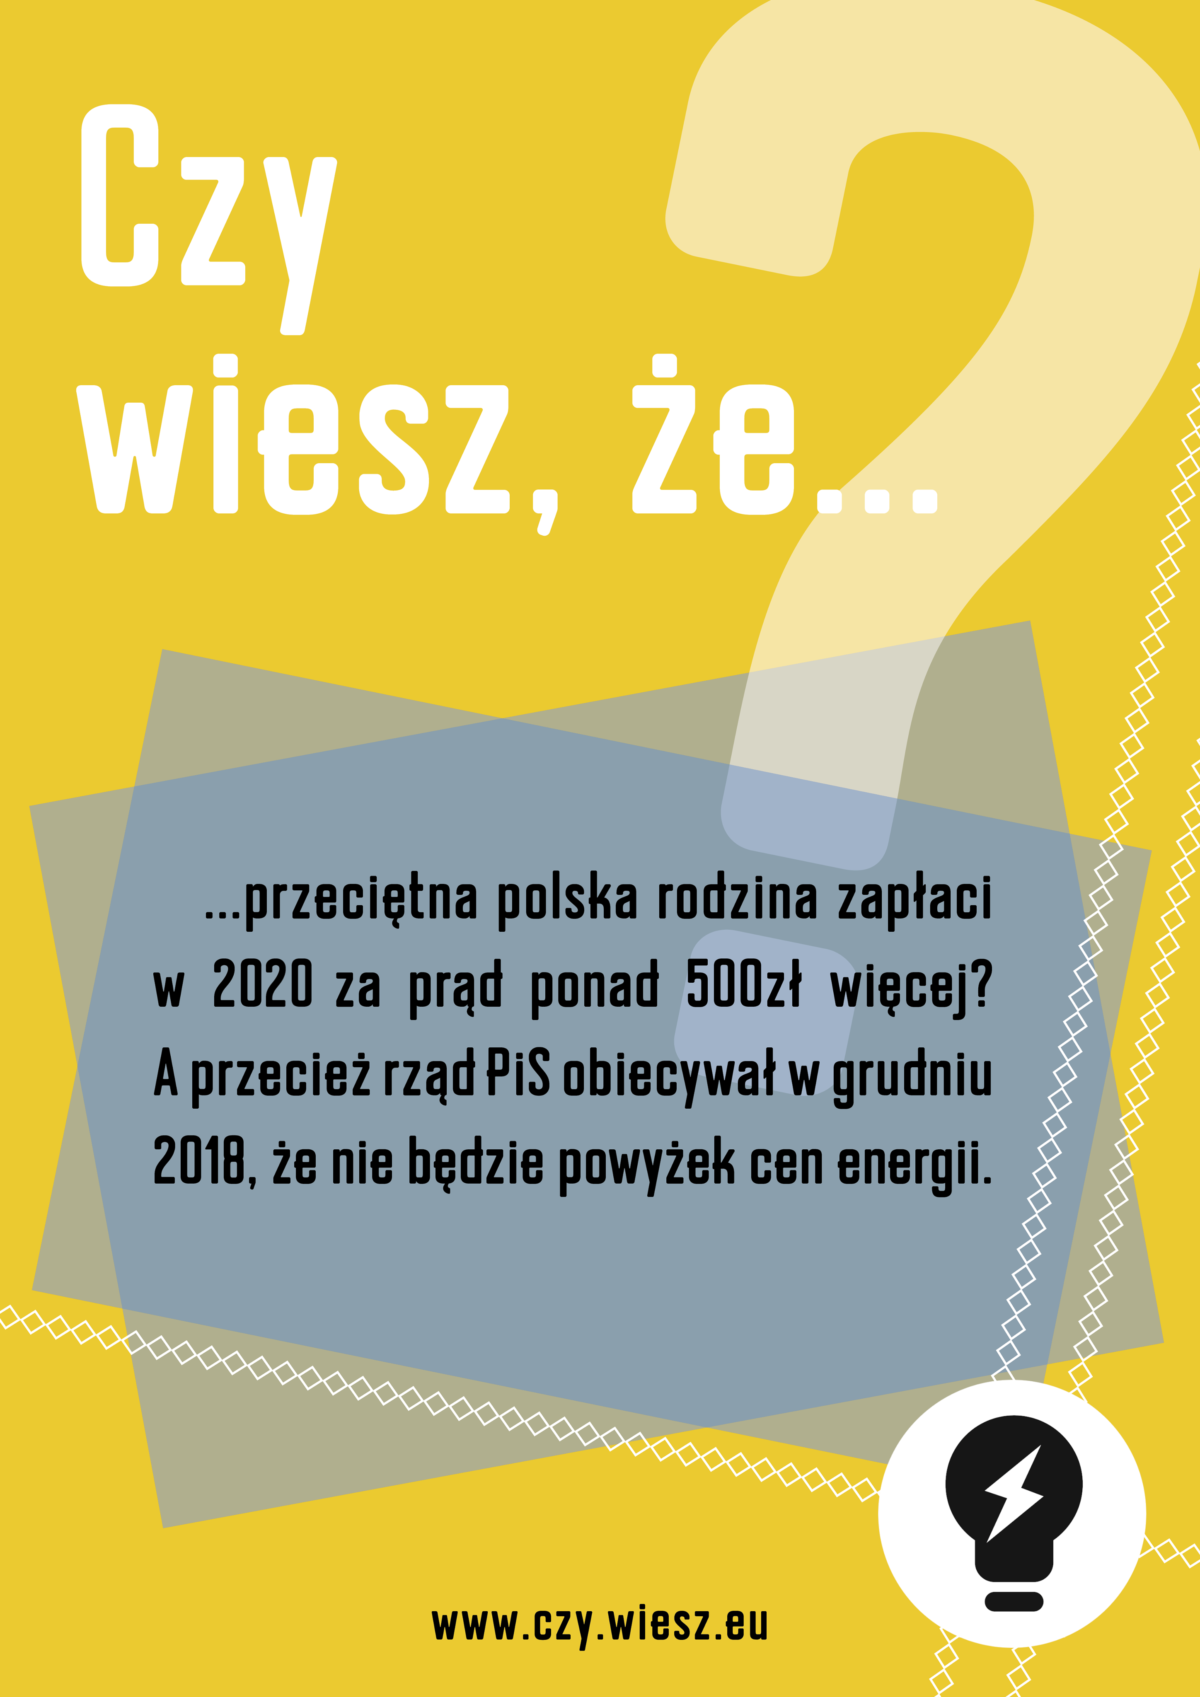 Czy wiesz, że przeciętna polska rodzina zapłaci w 2020 za prąd ponad 500zł więcej?